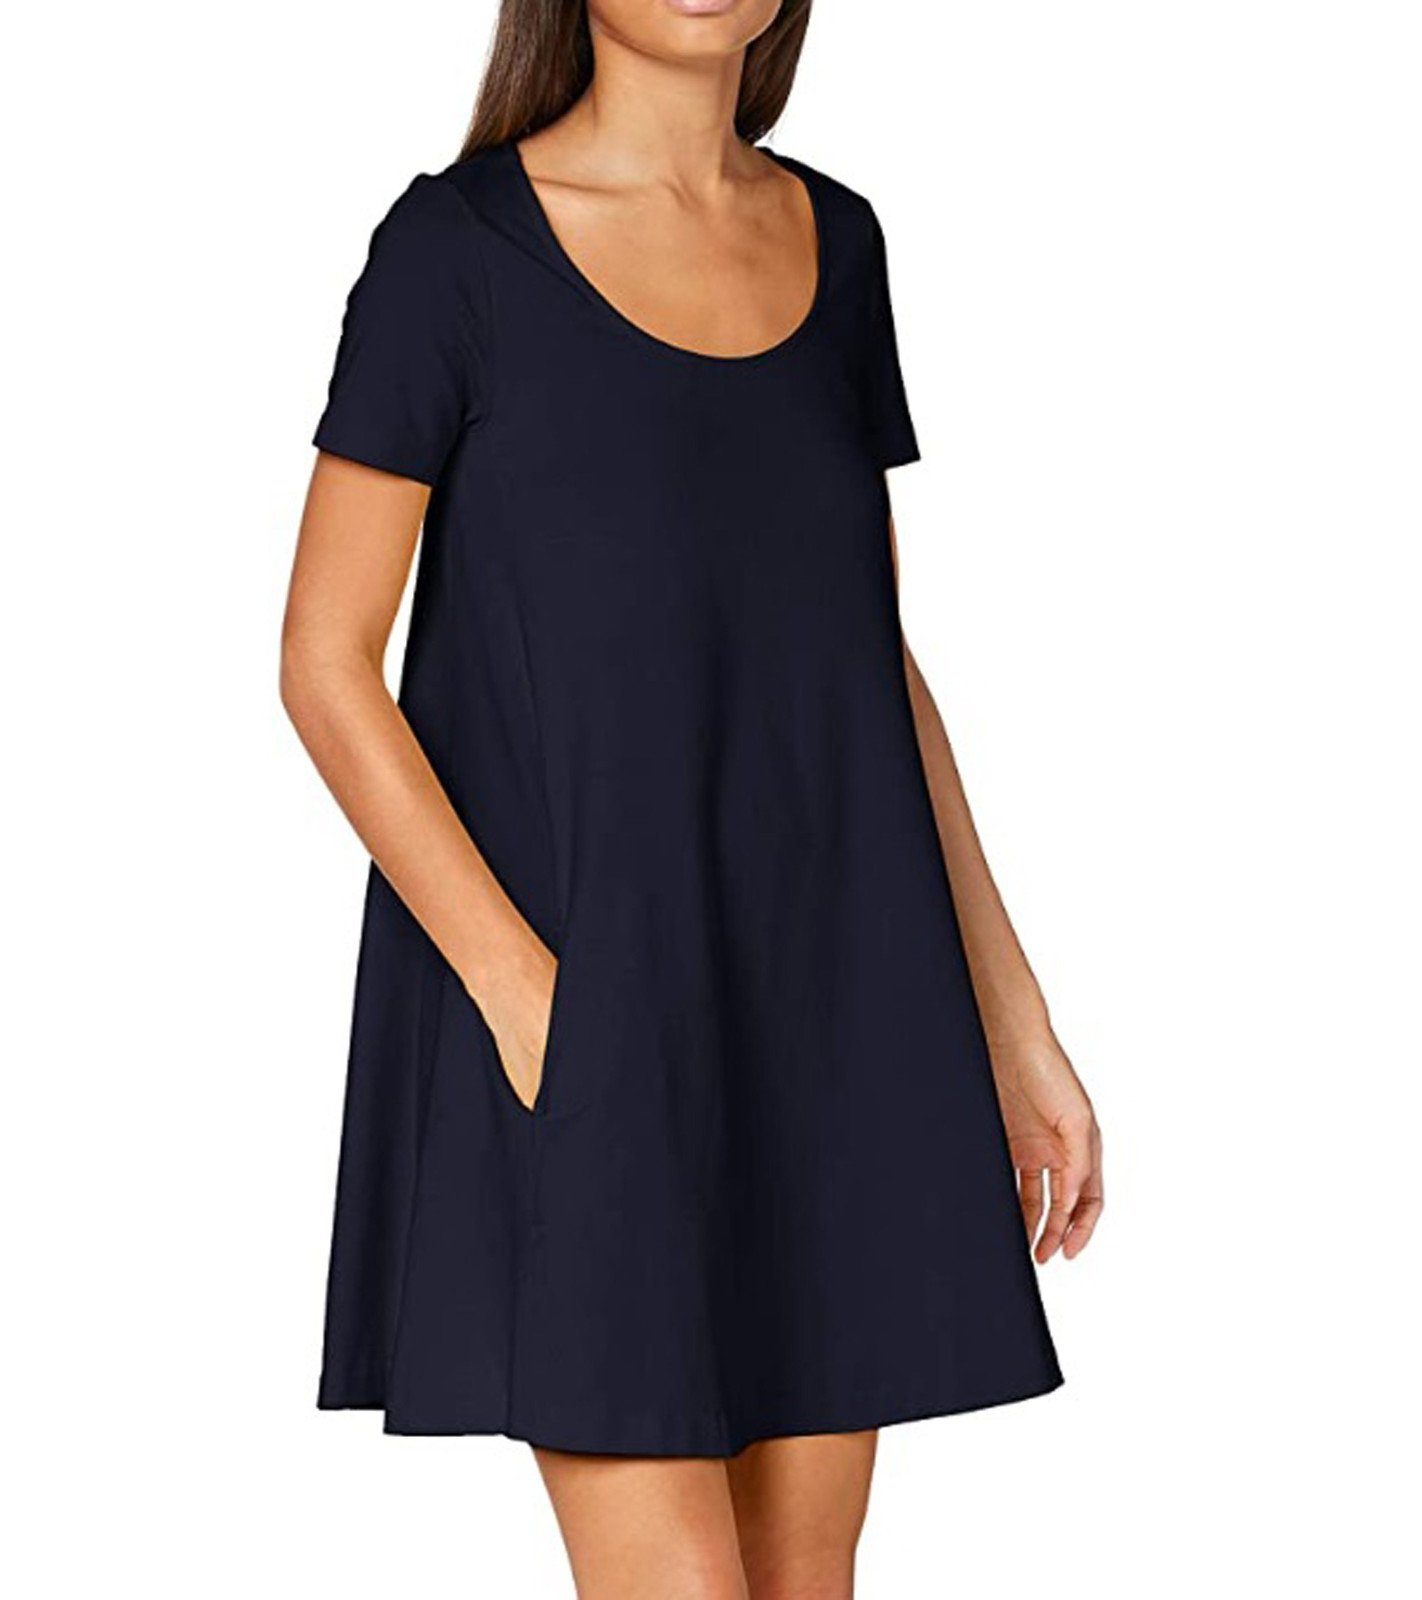 United Colors of Benetton Jerseykleid »UNITED COLORS OF BENETTON  Jersey-Kleid unifarbiges Damen Sommer-Kleid mit ausgestellter Passform  Rundhals-Kleid Blau« online kaufen | OTTO